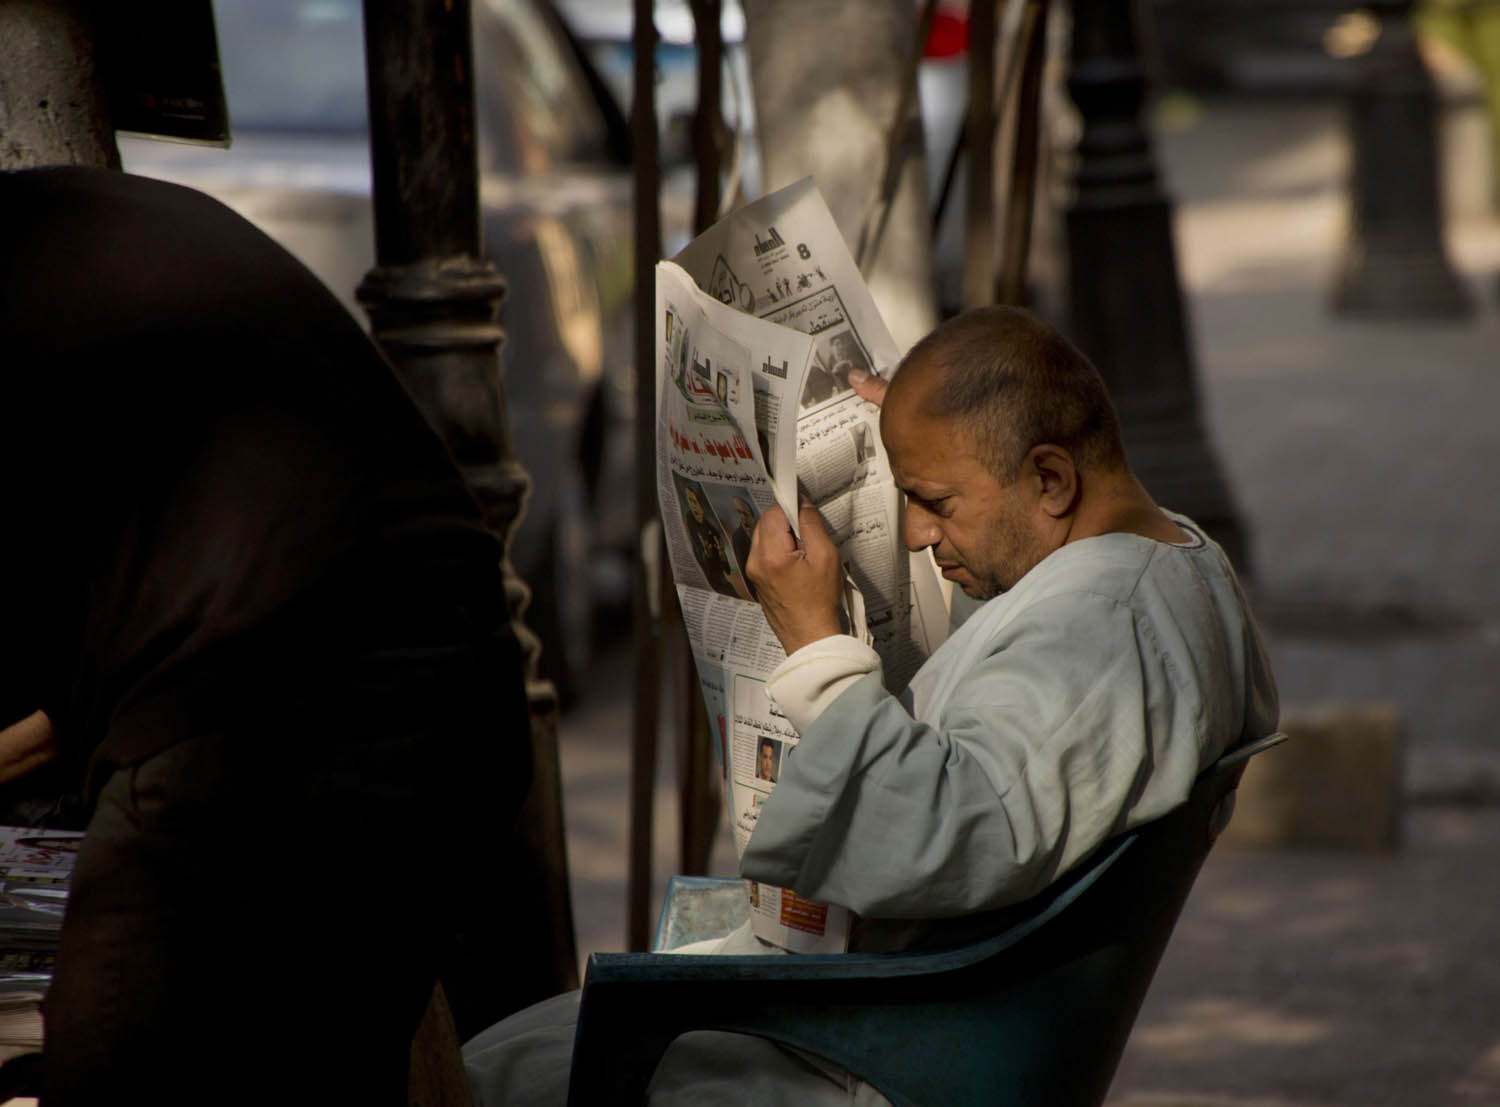 مصري يطالع صحيفة في حي الزمالك في القاهرة